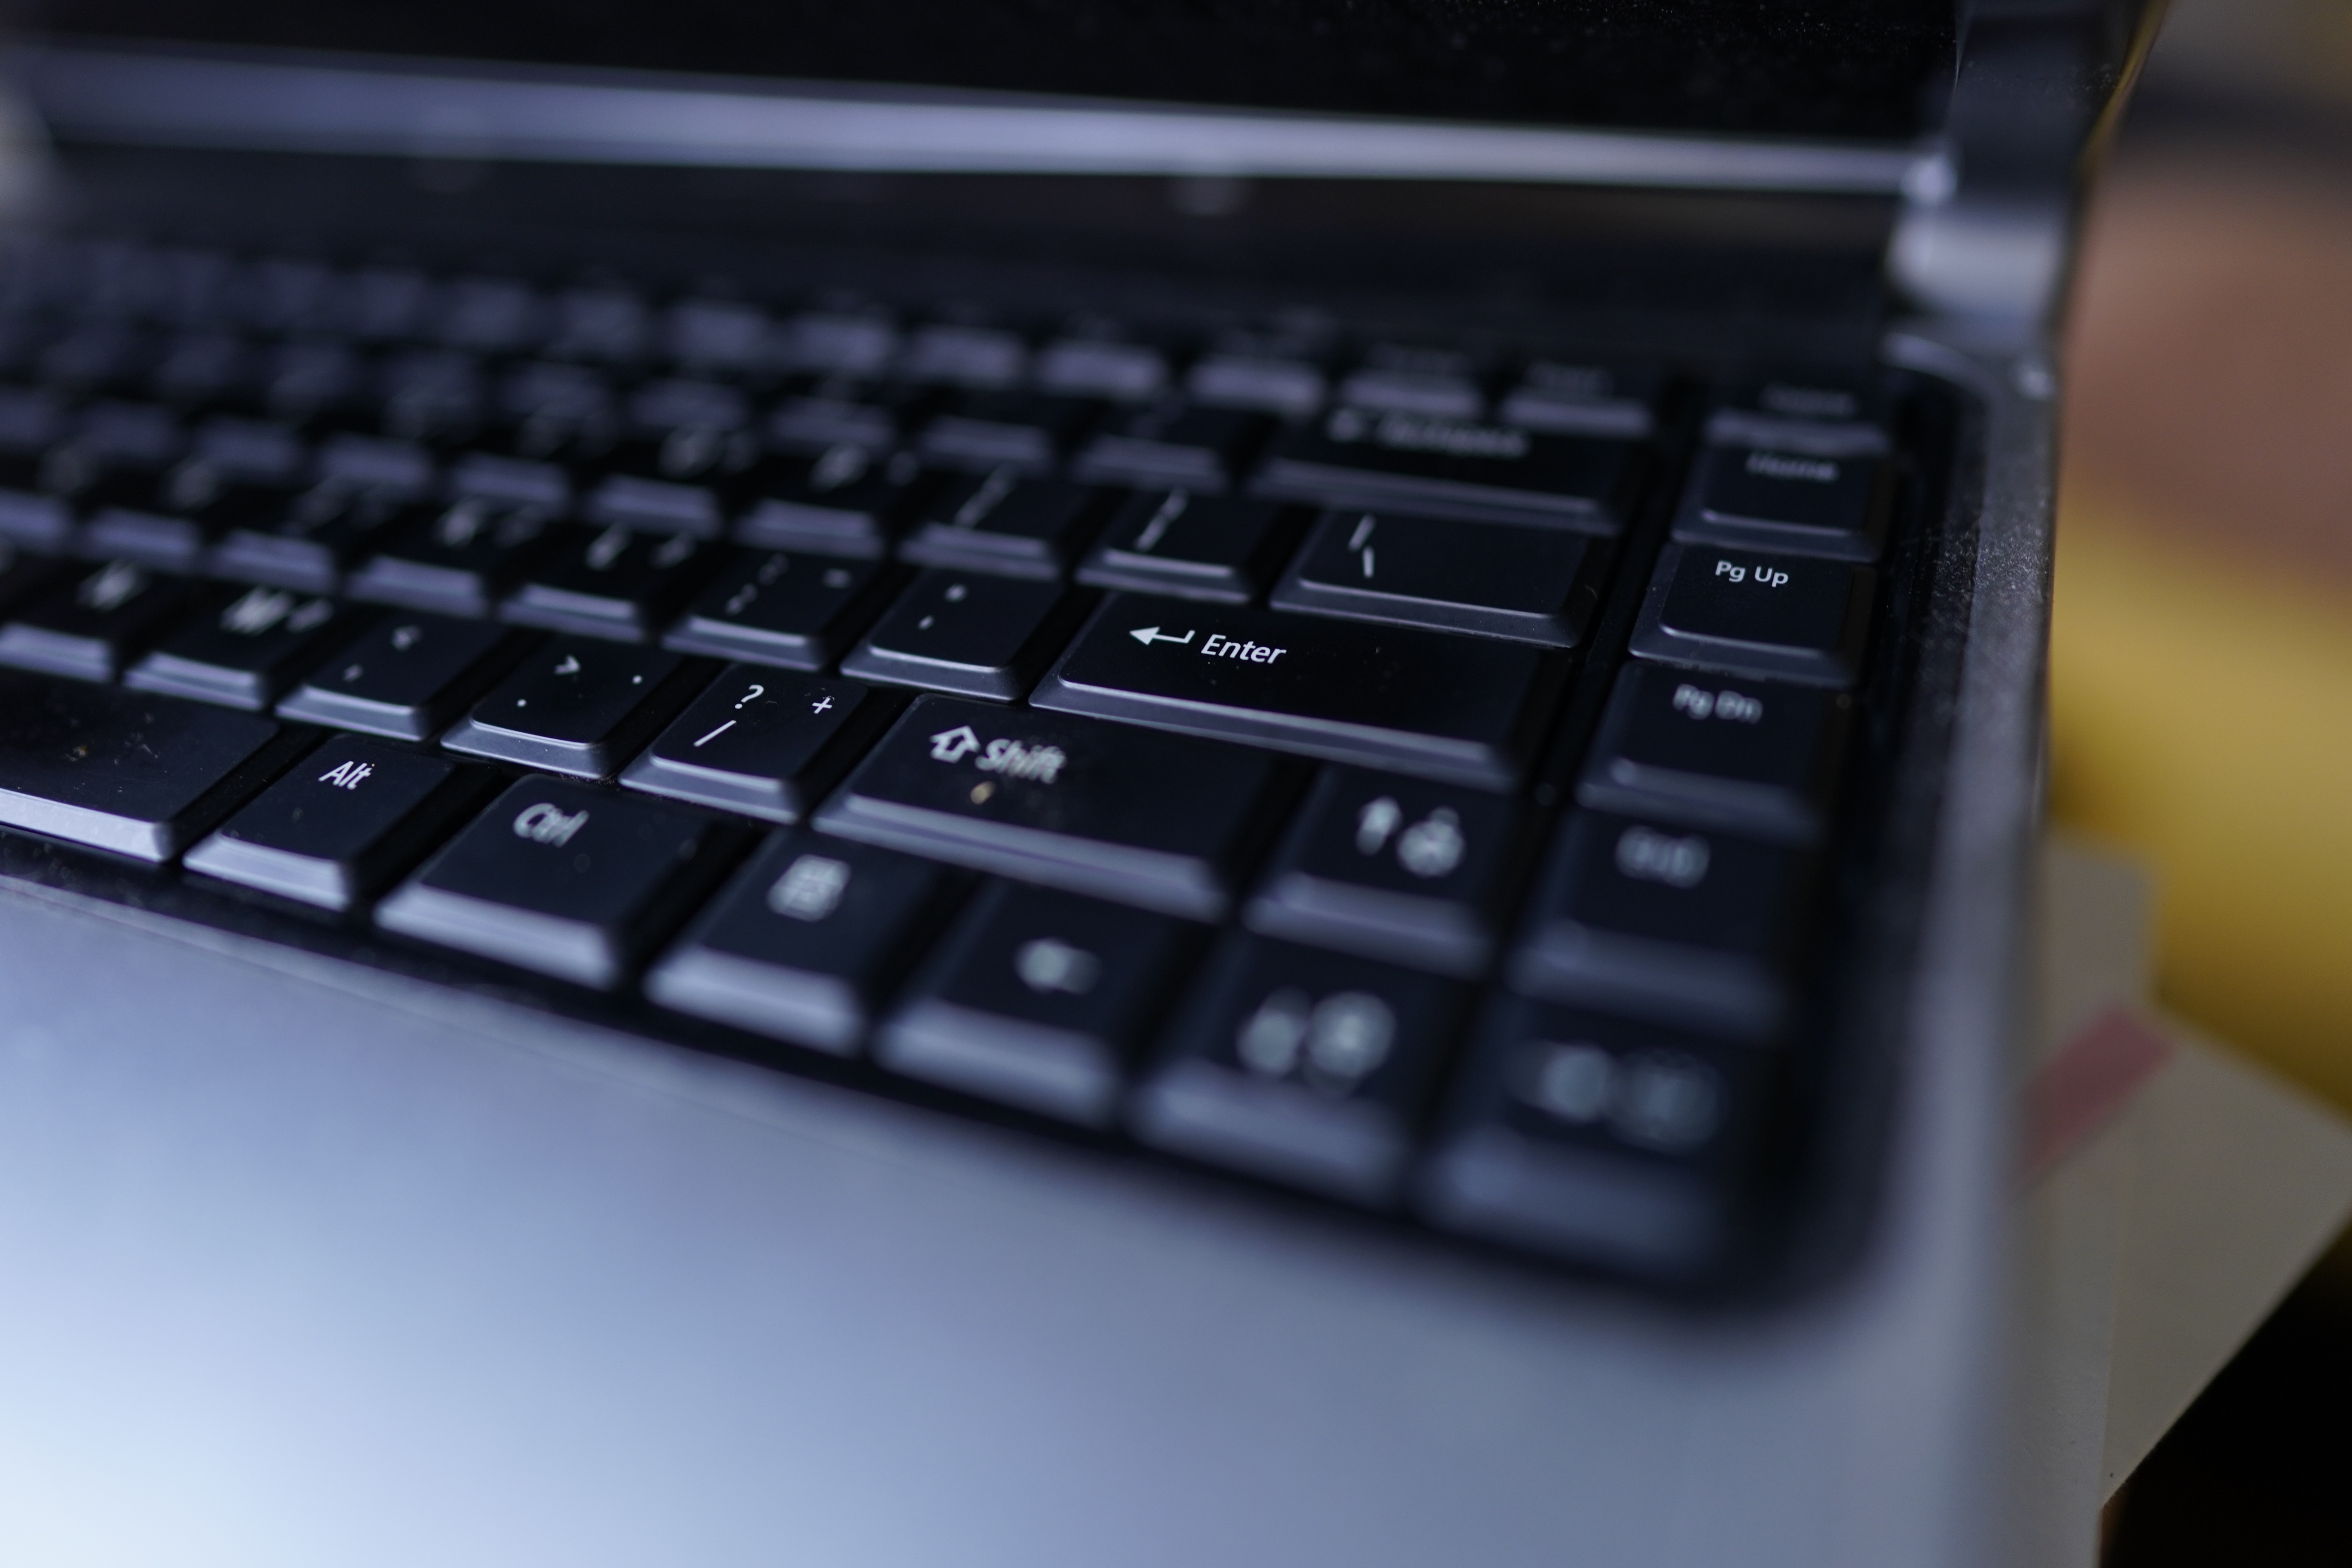 close-up-laptop-keyboard-2023-11-27-05-27-03-utc.jpg